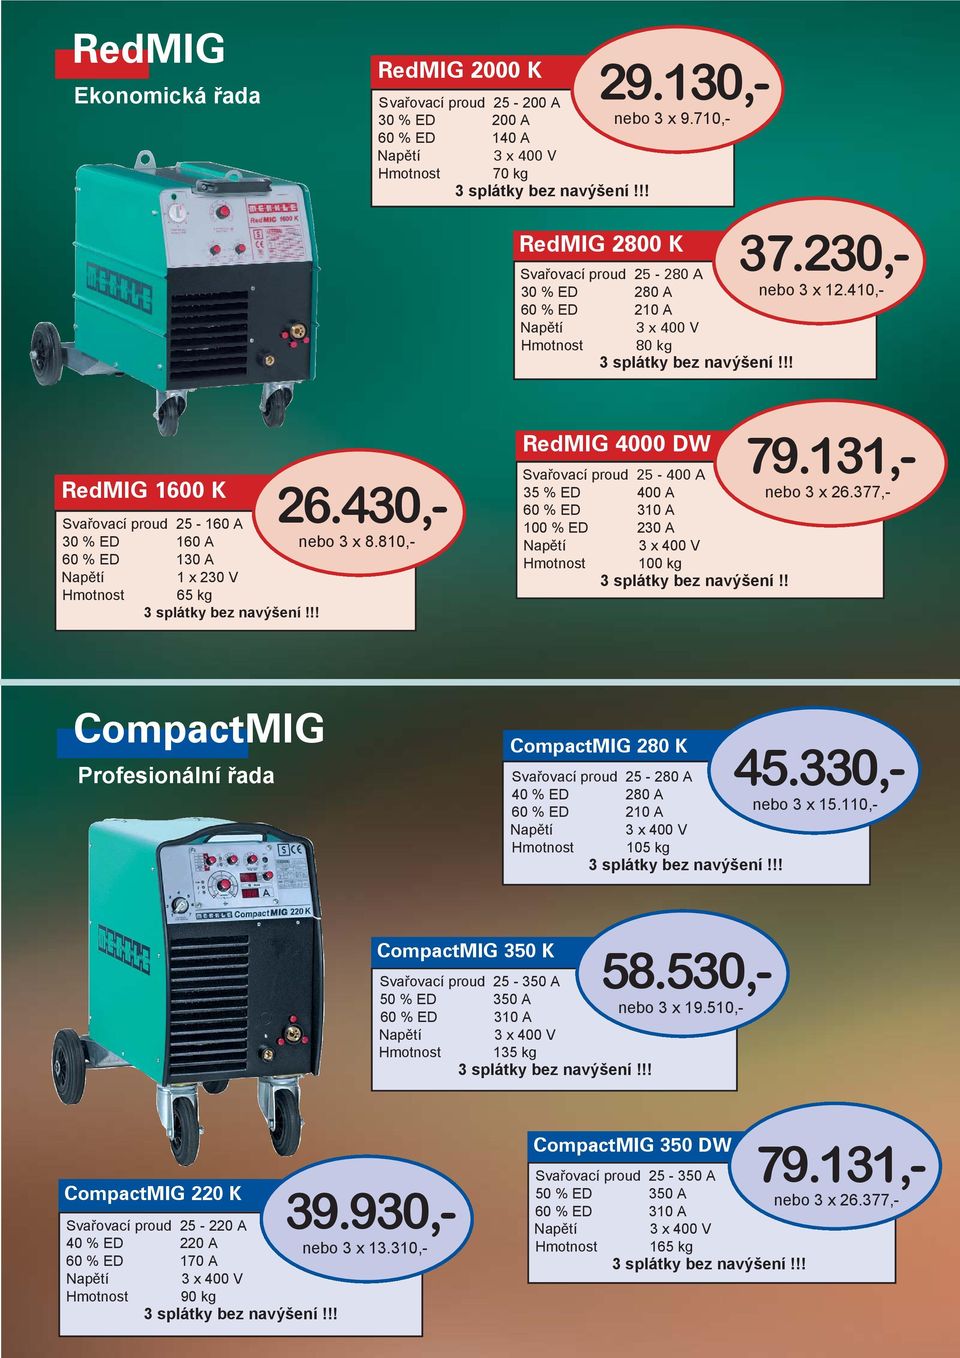 810,- RedMIG 4000 DW Svařovací proud 25-400 A 35 % ED 400 A 60 % ED 310 A 100 % ED 230 A 100 kg 3 splátky bez navýšení!! 79.131,- nebo 3 x 26.